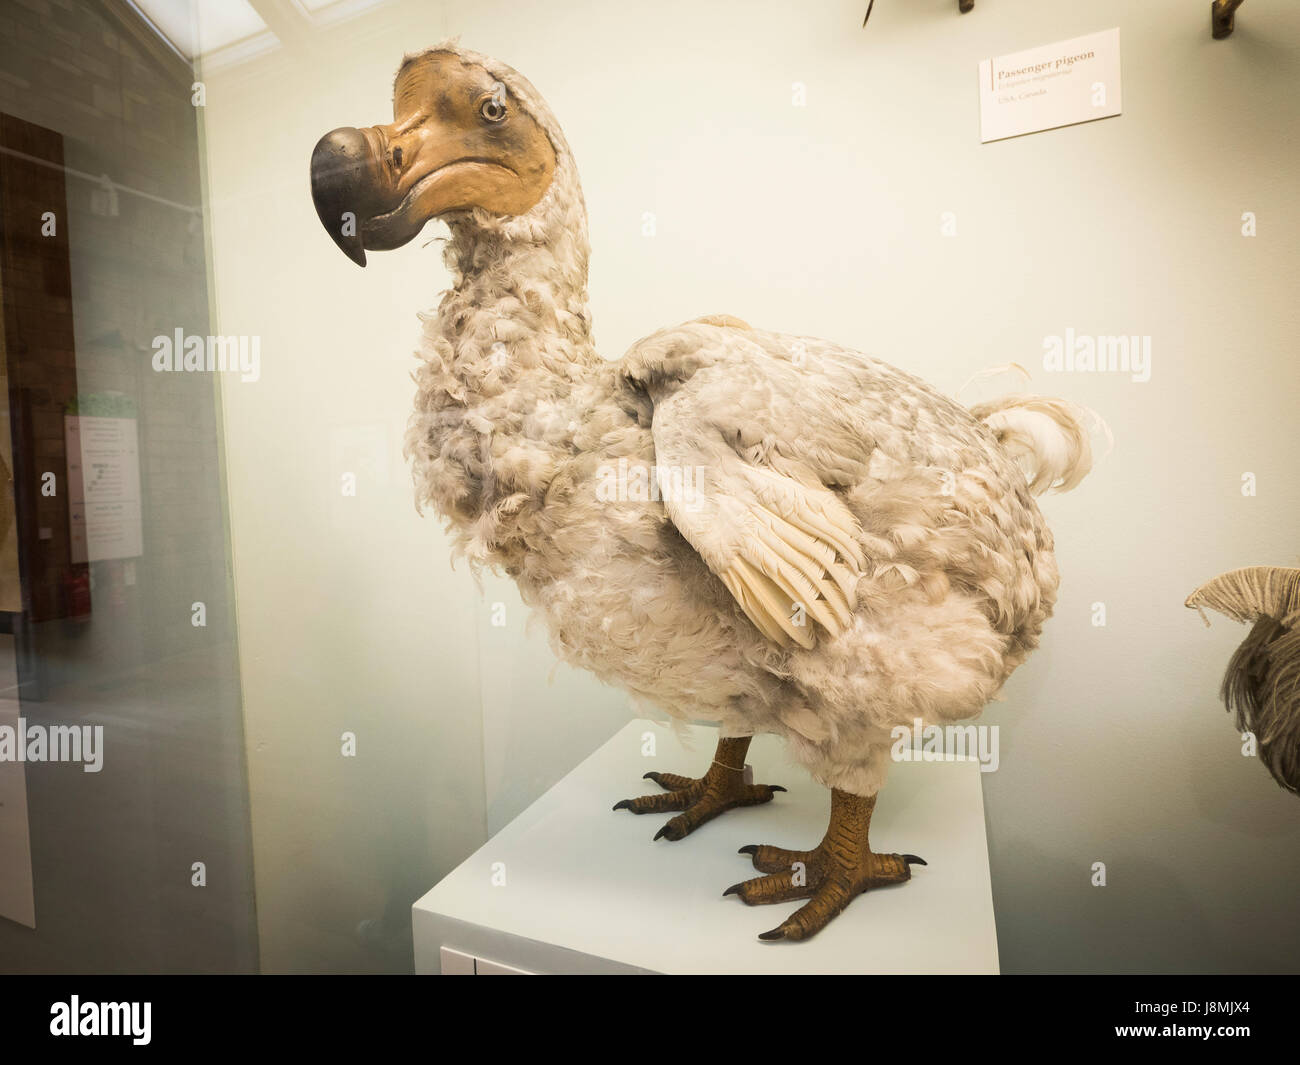 El Dodo es un extinto ave no voladora que fue endémica de la isla de Mauricio, al este de Madagascar en el Océano Índico. Foto de stock